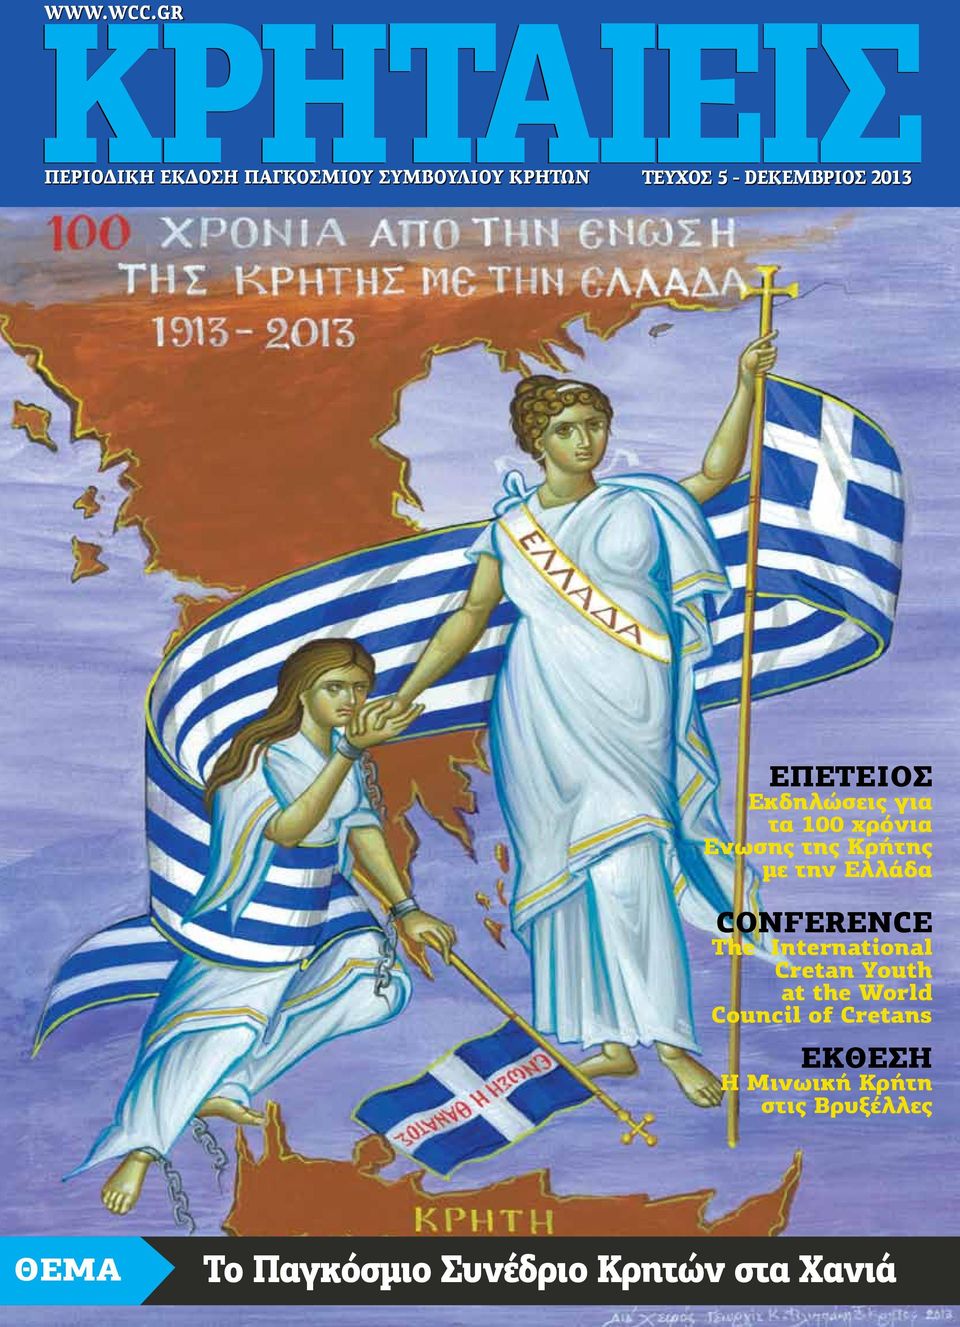 χρόνια Ενωσης της Κρήτης με την Ελλάδα conference The International Cretan